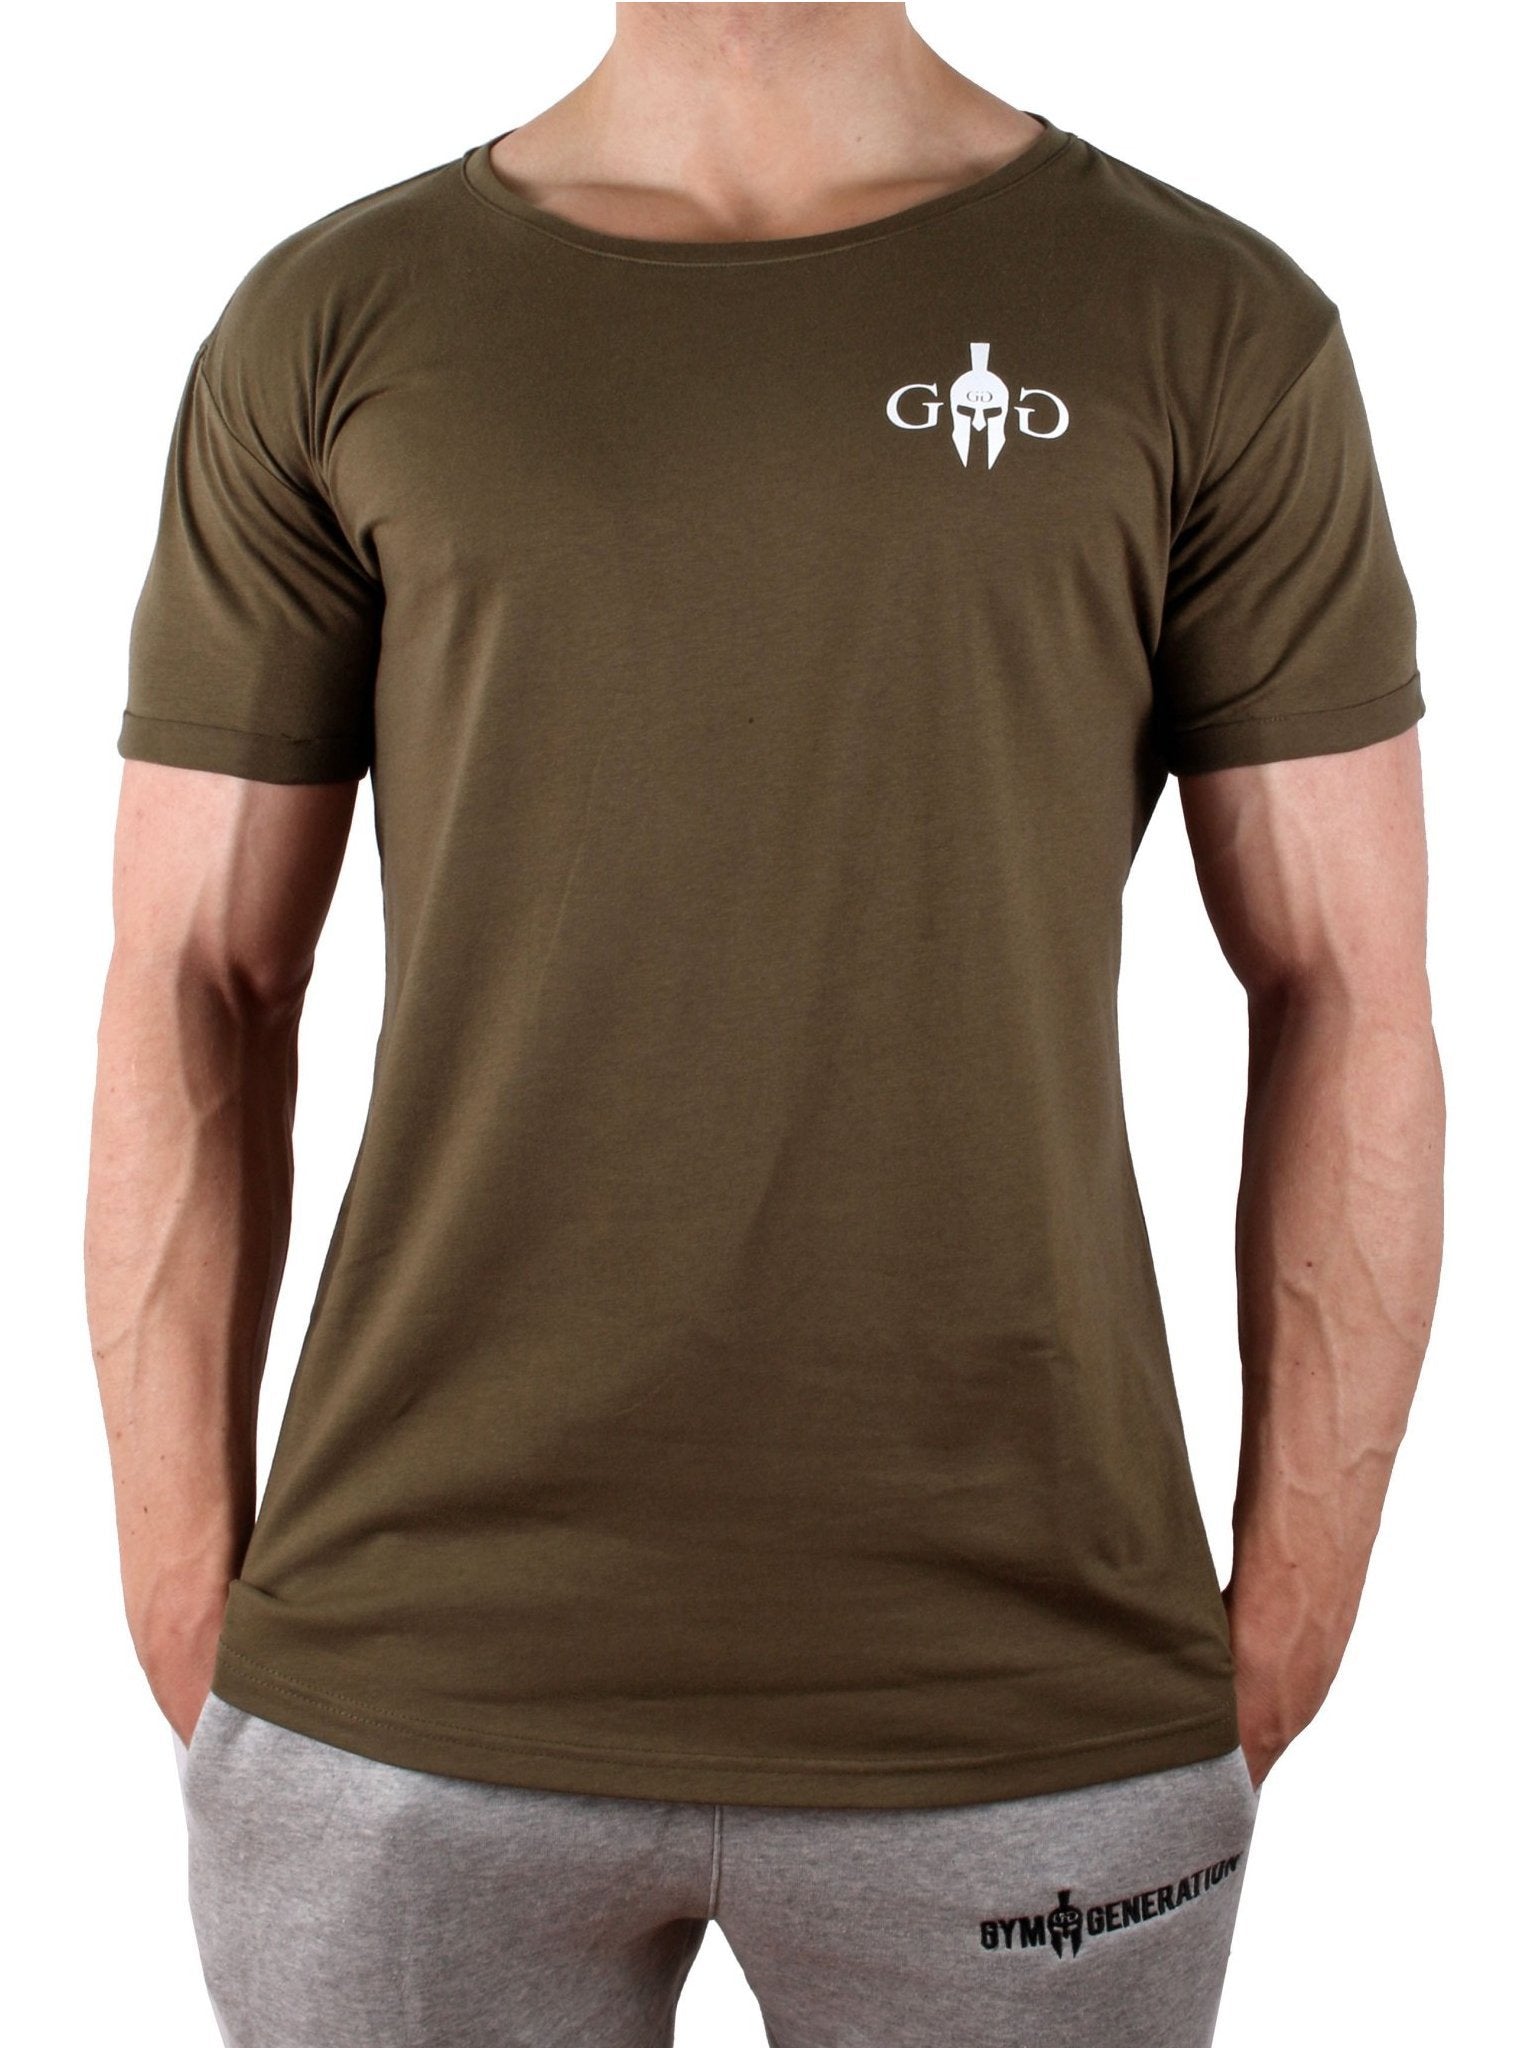 GG Club T-Shirt - Khaki - Gym Generation®--www.gymgeneration.ch